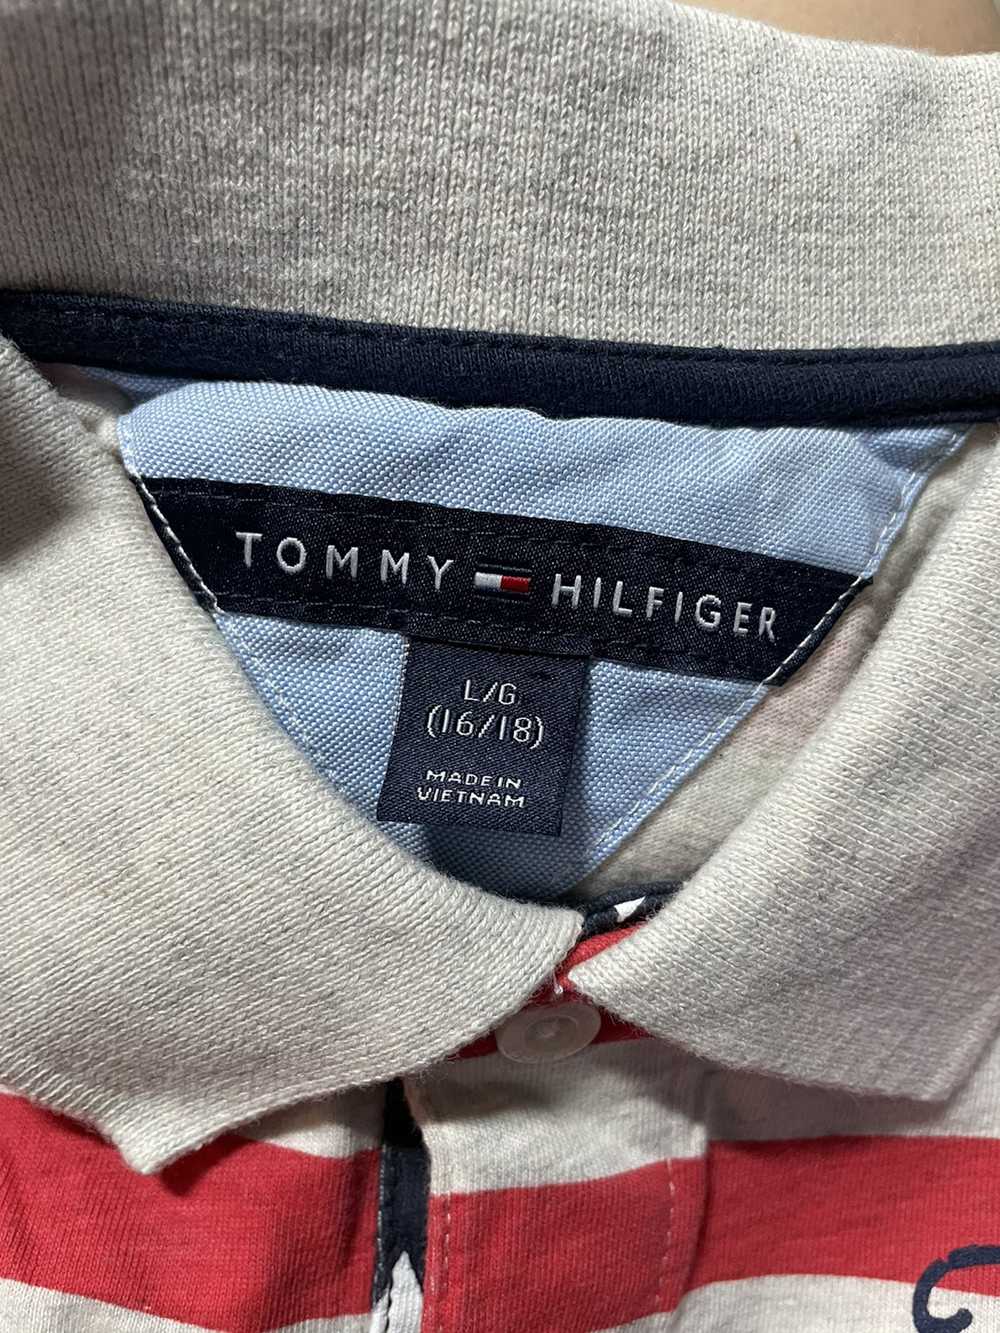 Tommy Hilfiger Tommy Hilfiger Shirt - image 3